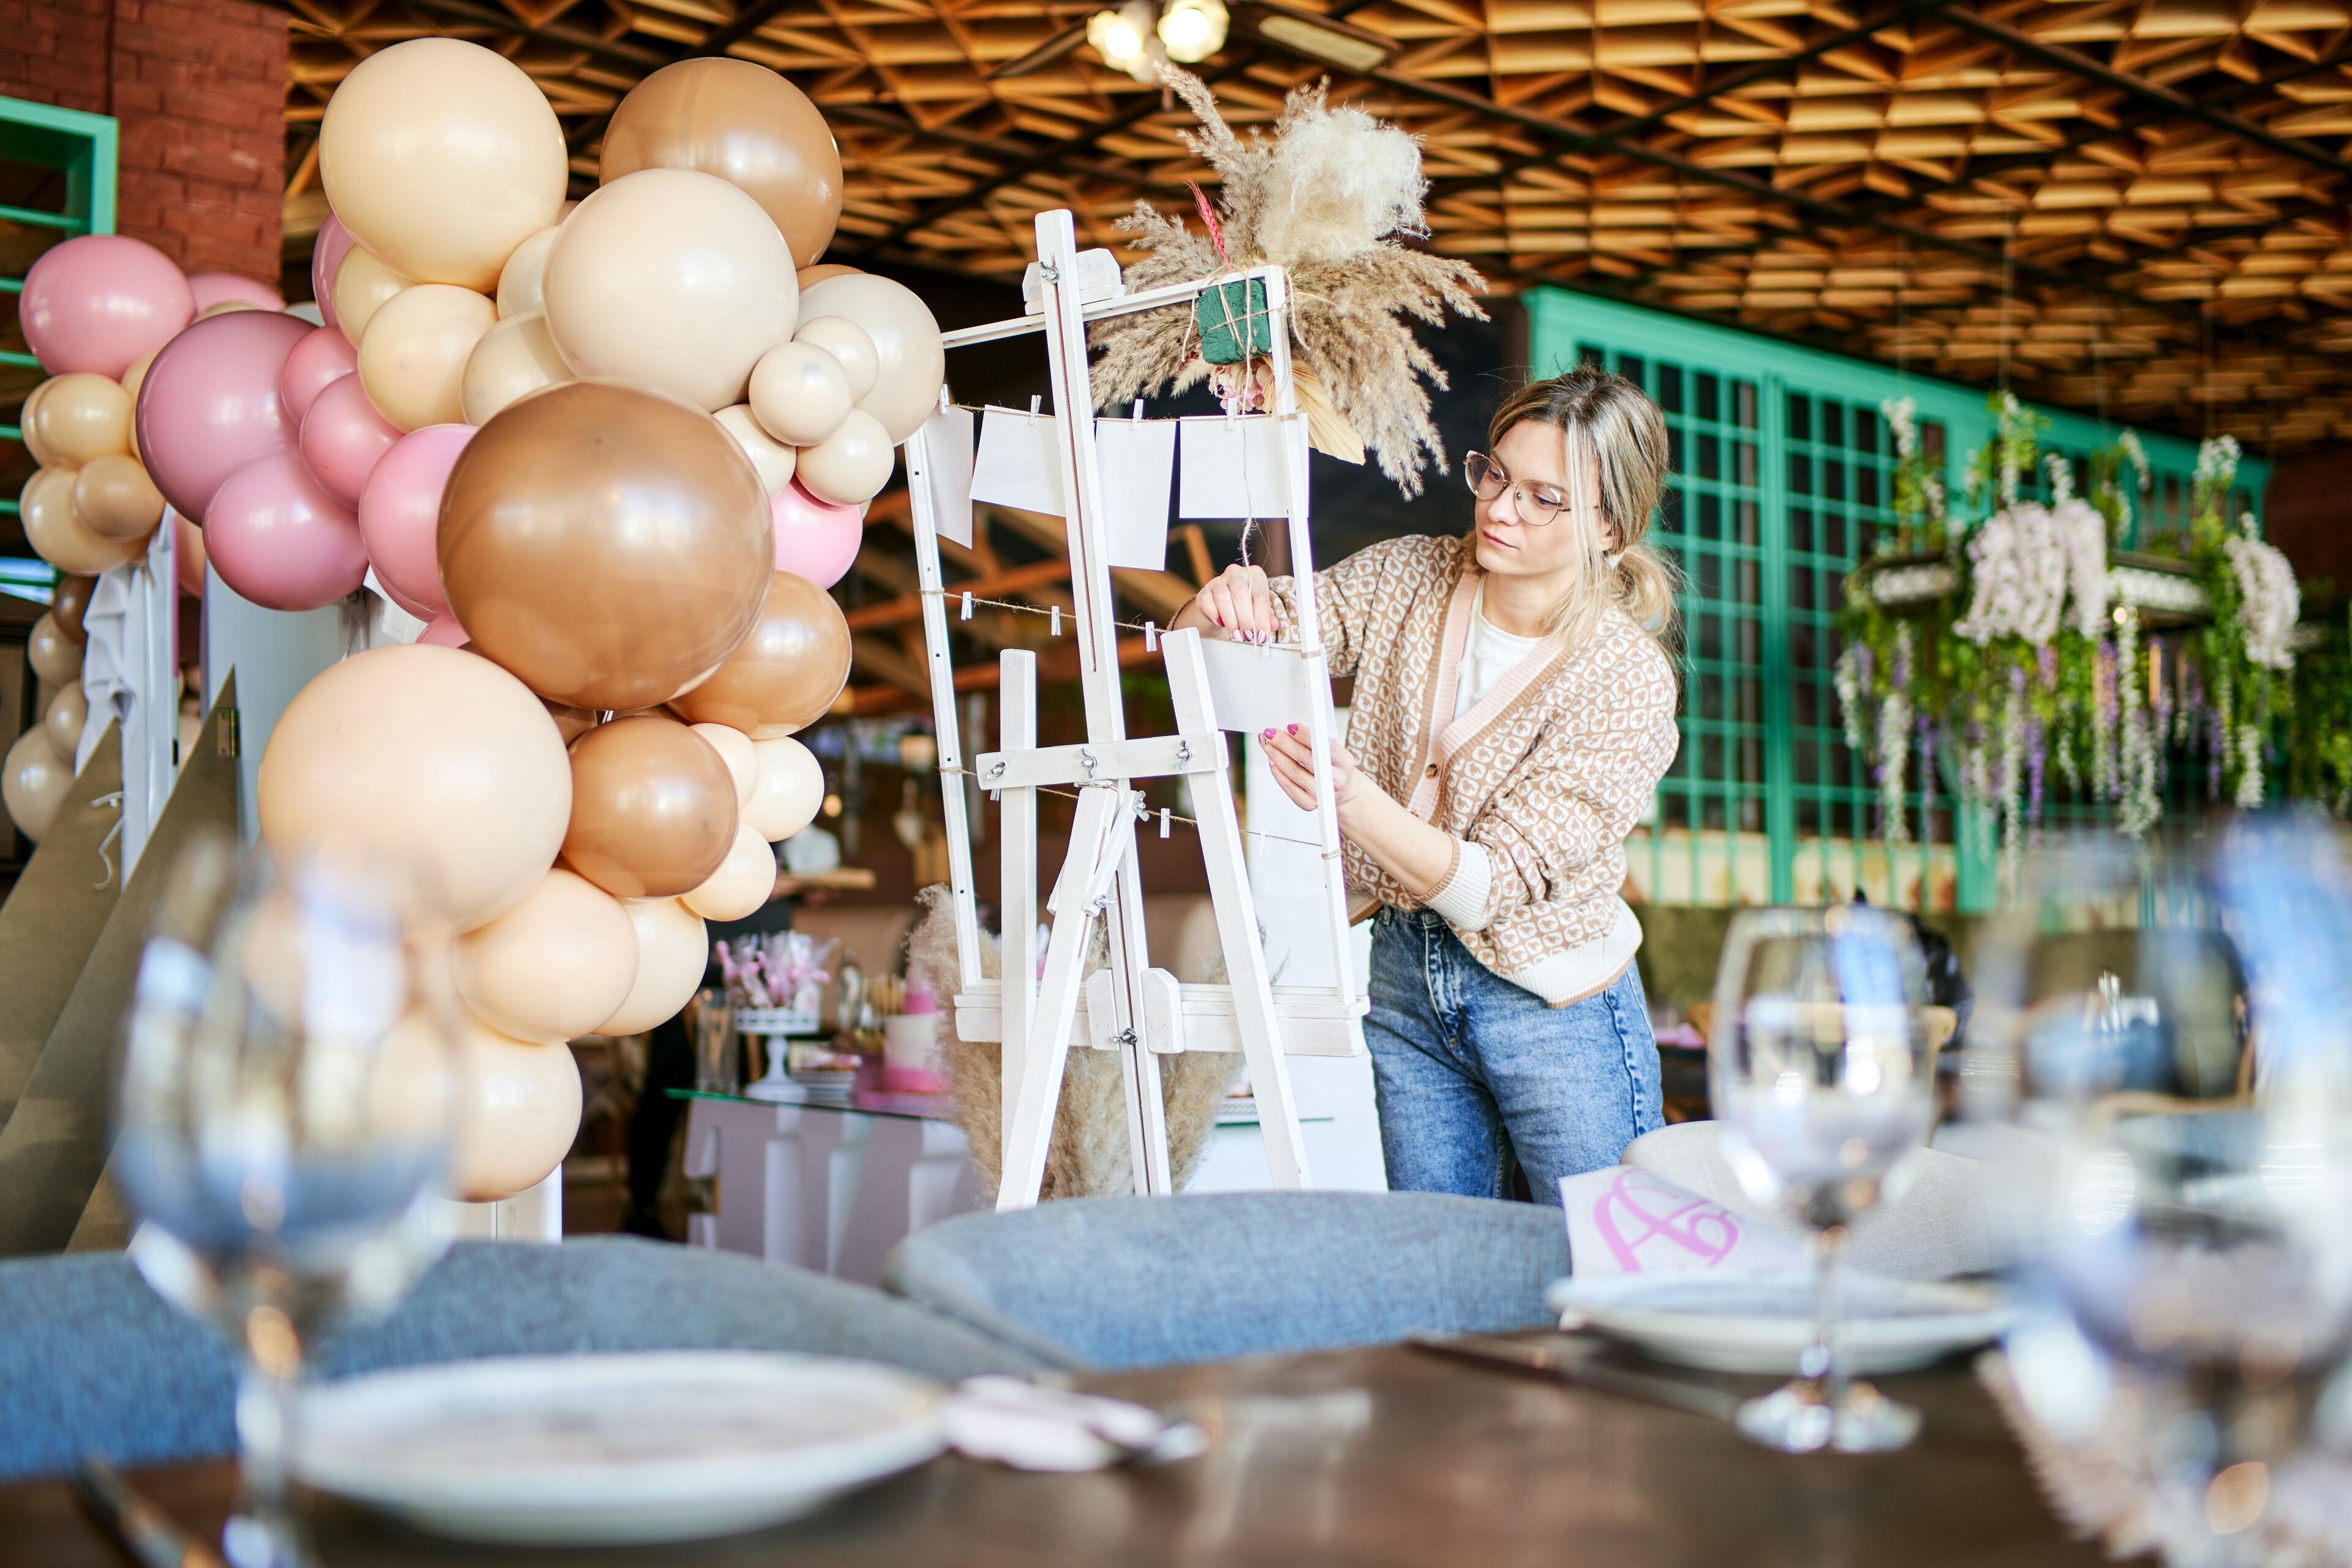 ImageUne organisatrice d'événements concentrée ajuste les décorations sur un chevalet blanc dans un cadre festif avec des ballons et des tables élégamment dressées.